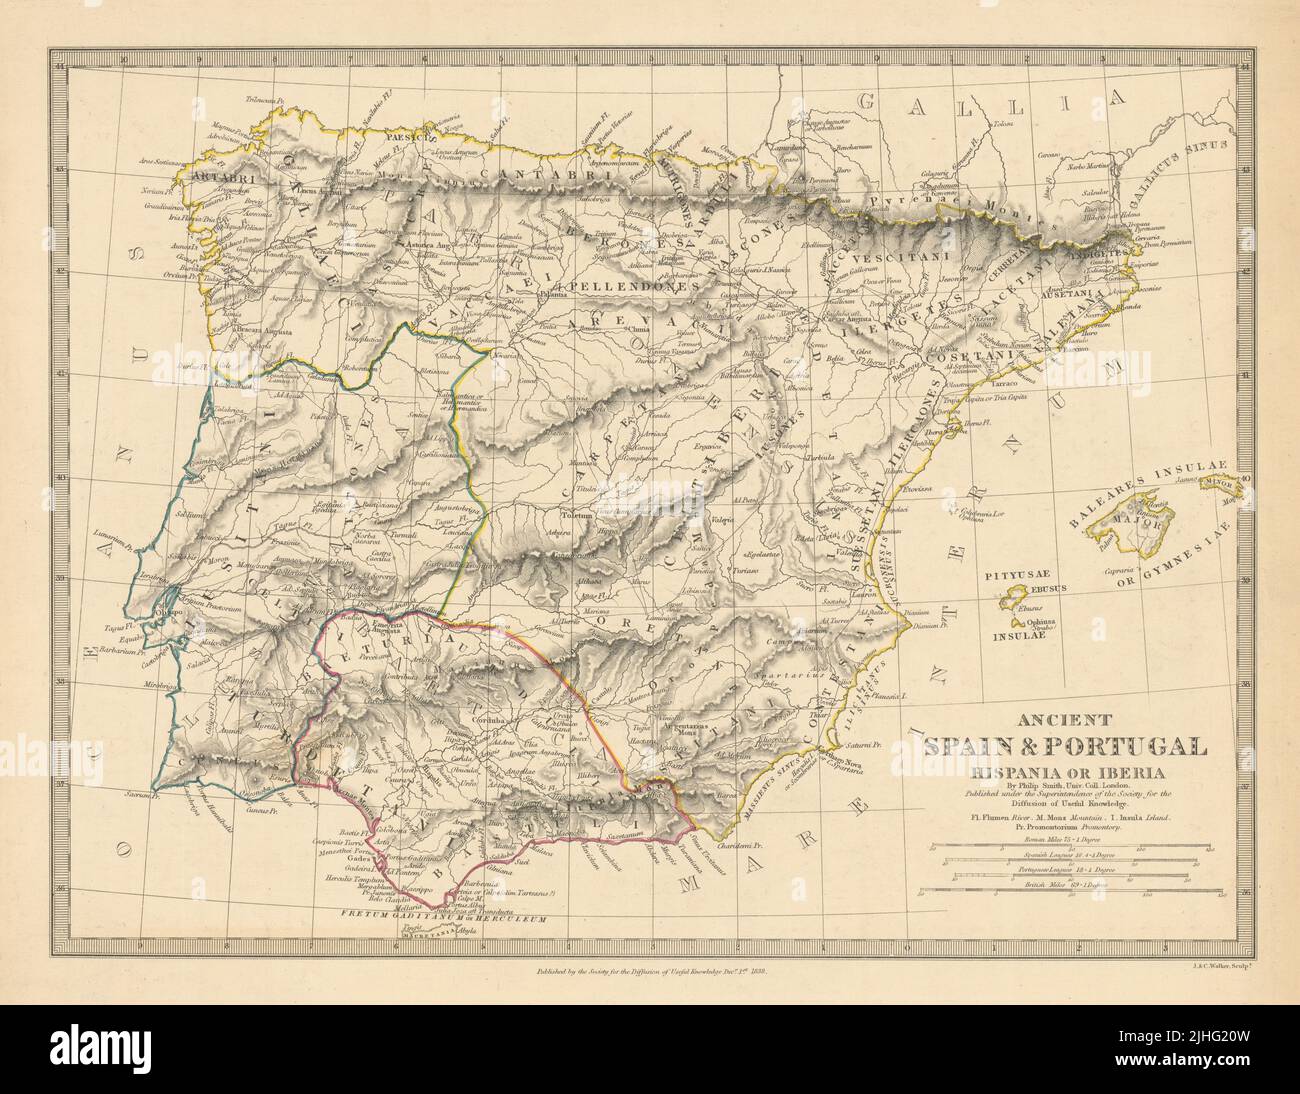 HISPANIA IBERIA. Antigua España y Portugal. Nombres y caminos romanos. Mapa SDUK 1848 Foto de stock